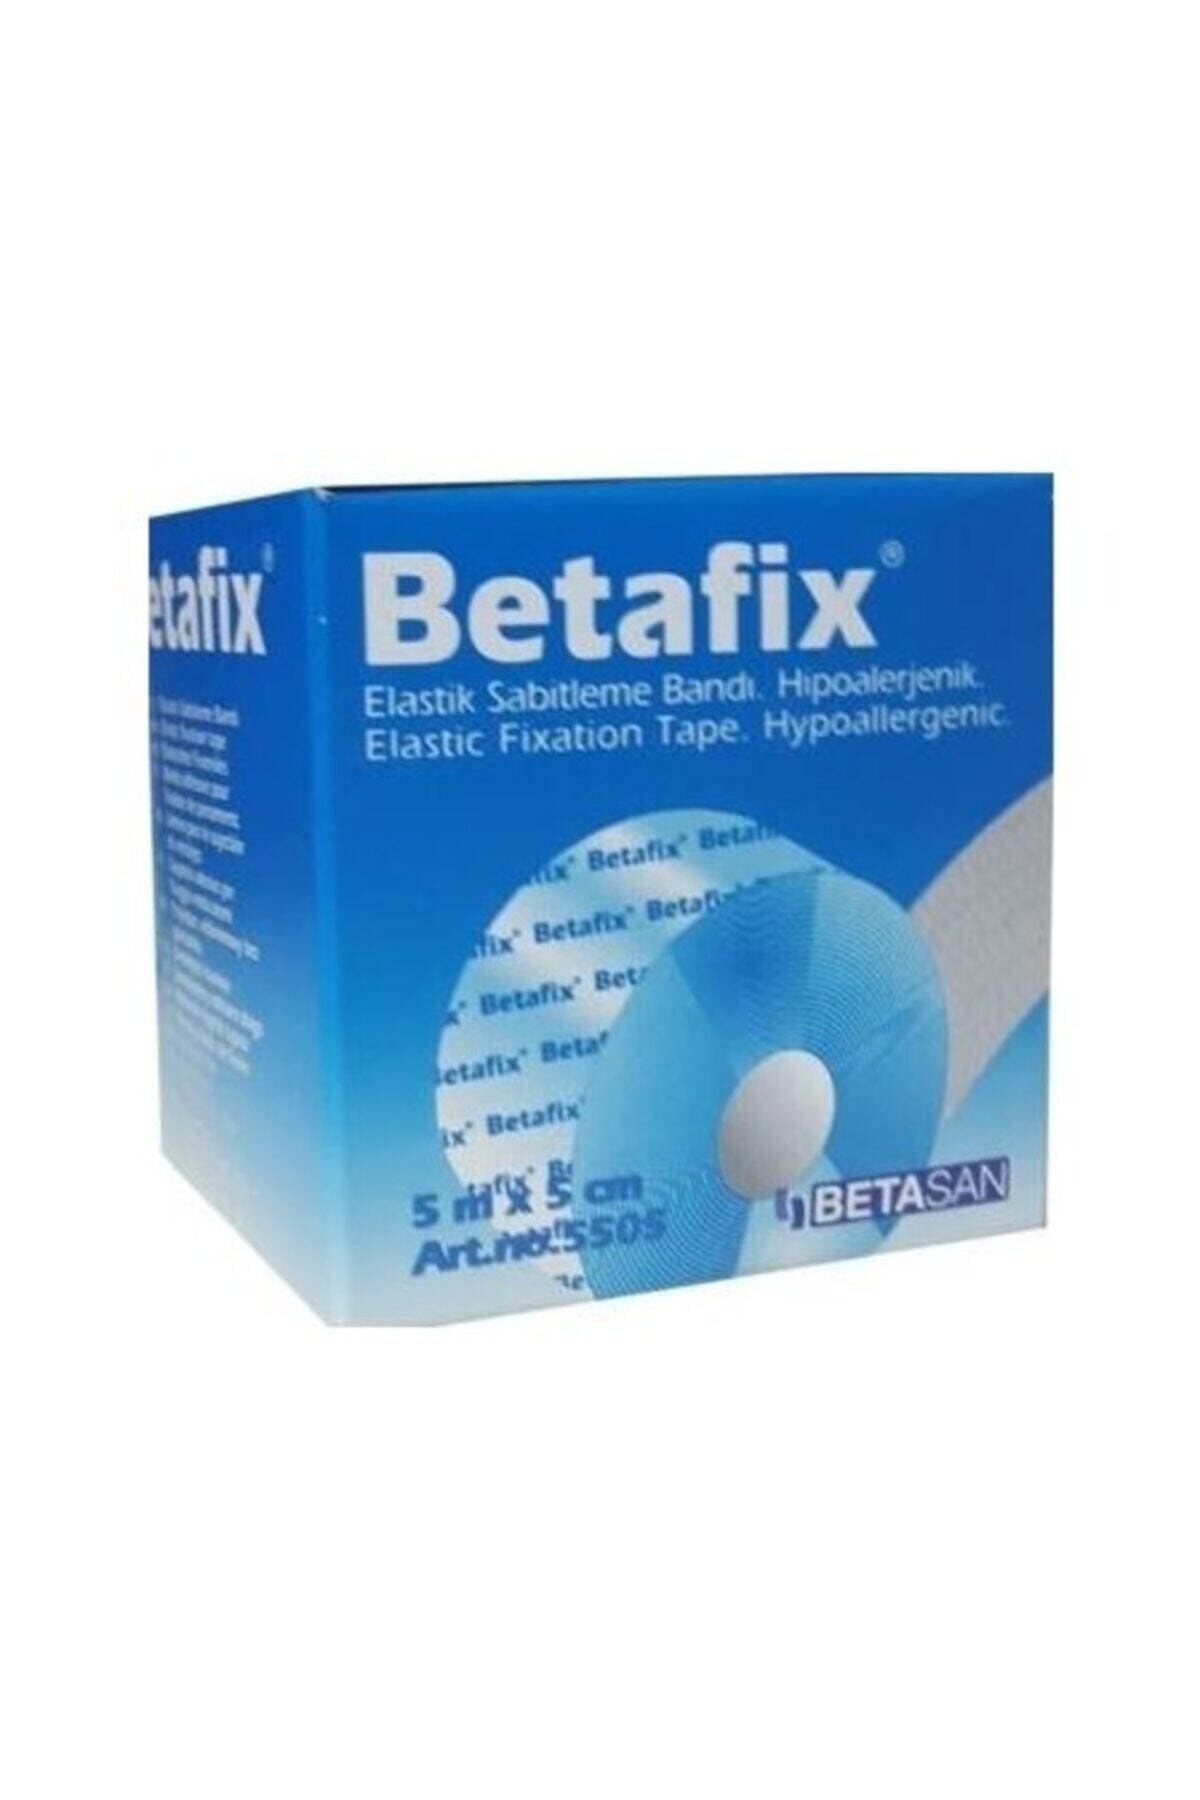 Betafix Esnek Sabitleme Bandı 5mt X 5cm Flaster